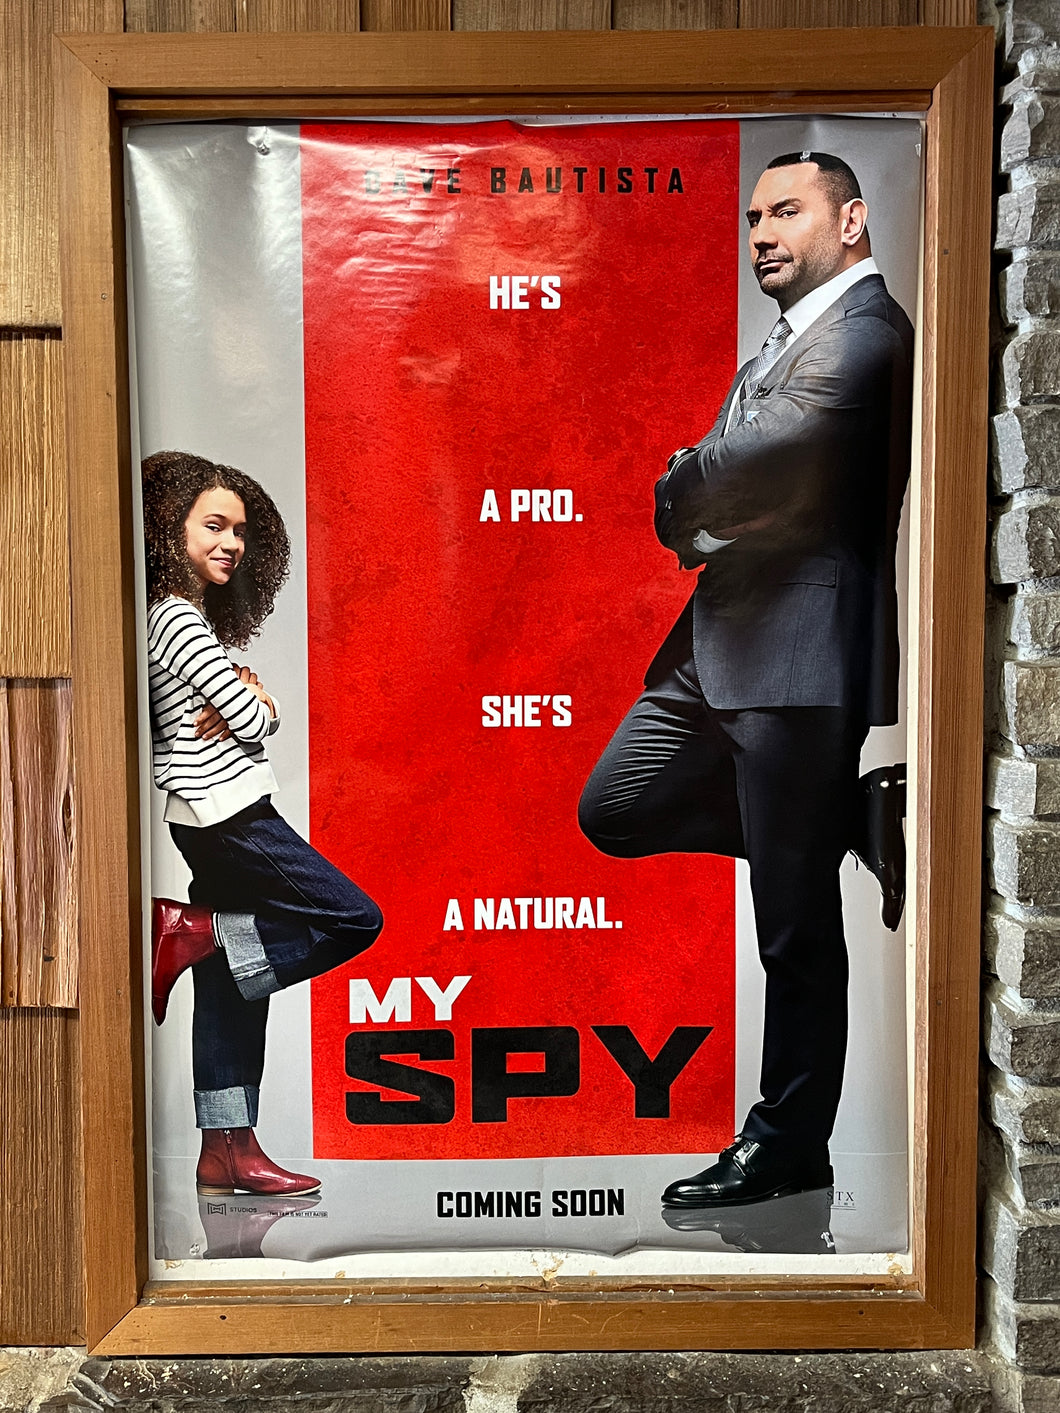 My Spy (2020)